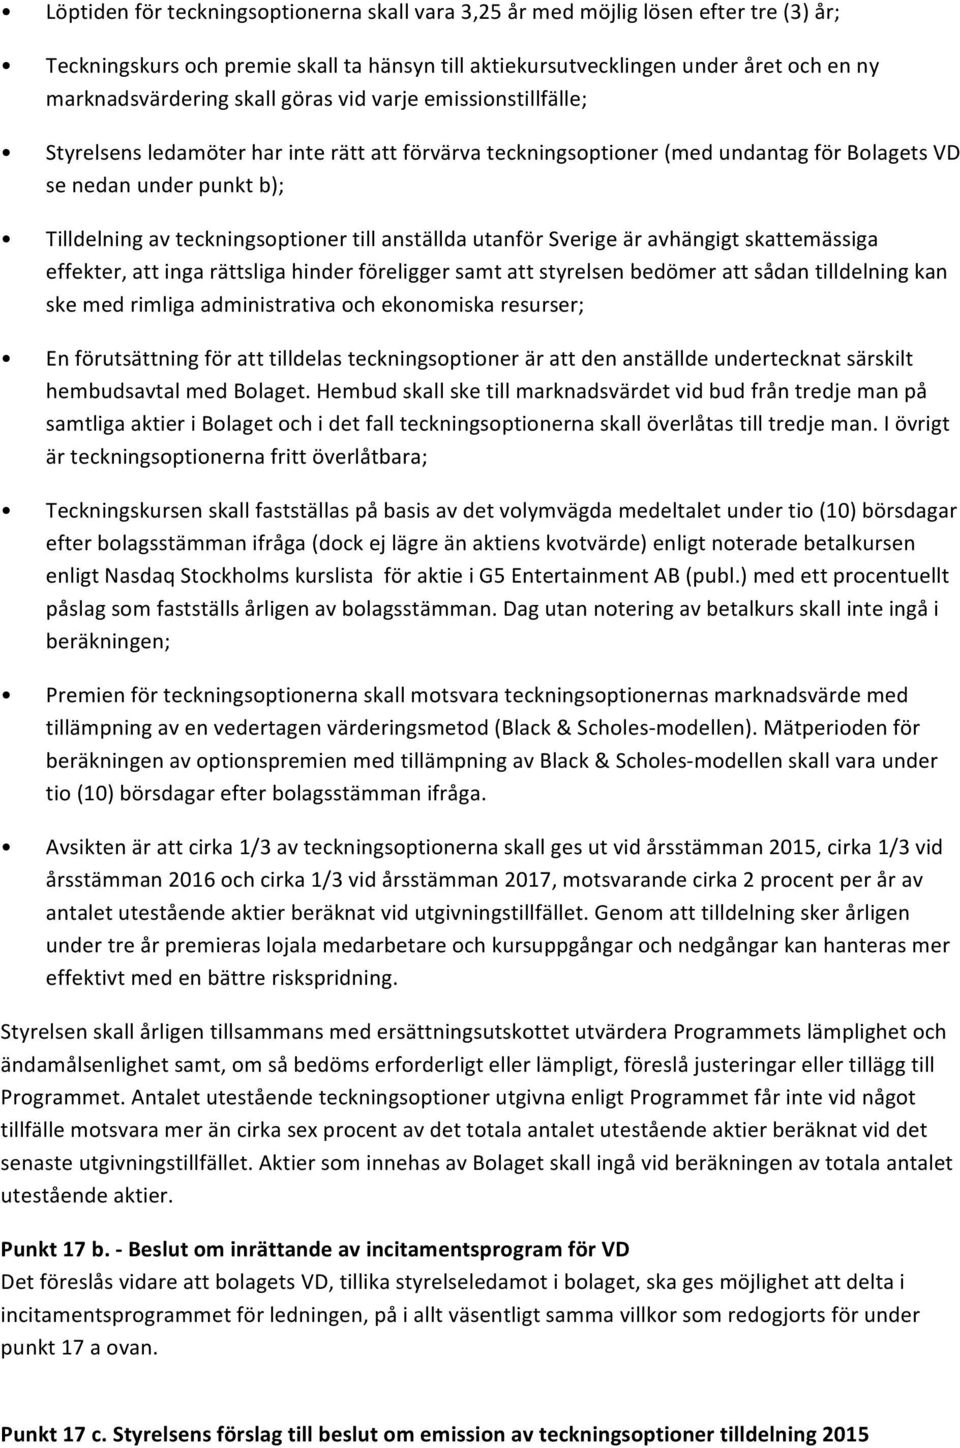 anställda utanför Sverige är avhängigt skattemässiga effekter, att inga rättsliga hinder föreligger samt att styrelsen bedömer att sådan tilldelning kan ske med rimliga administrativa och ekonomiska